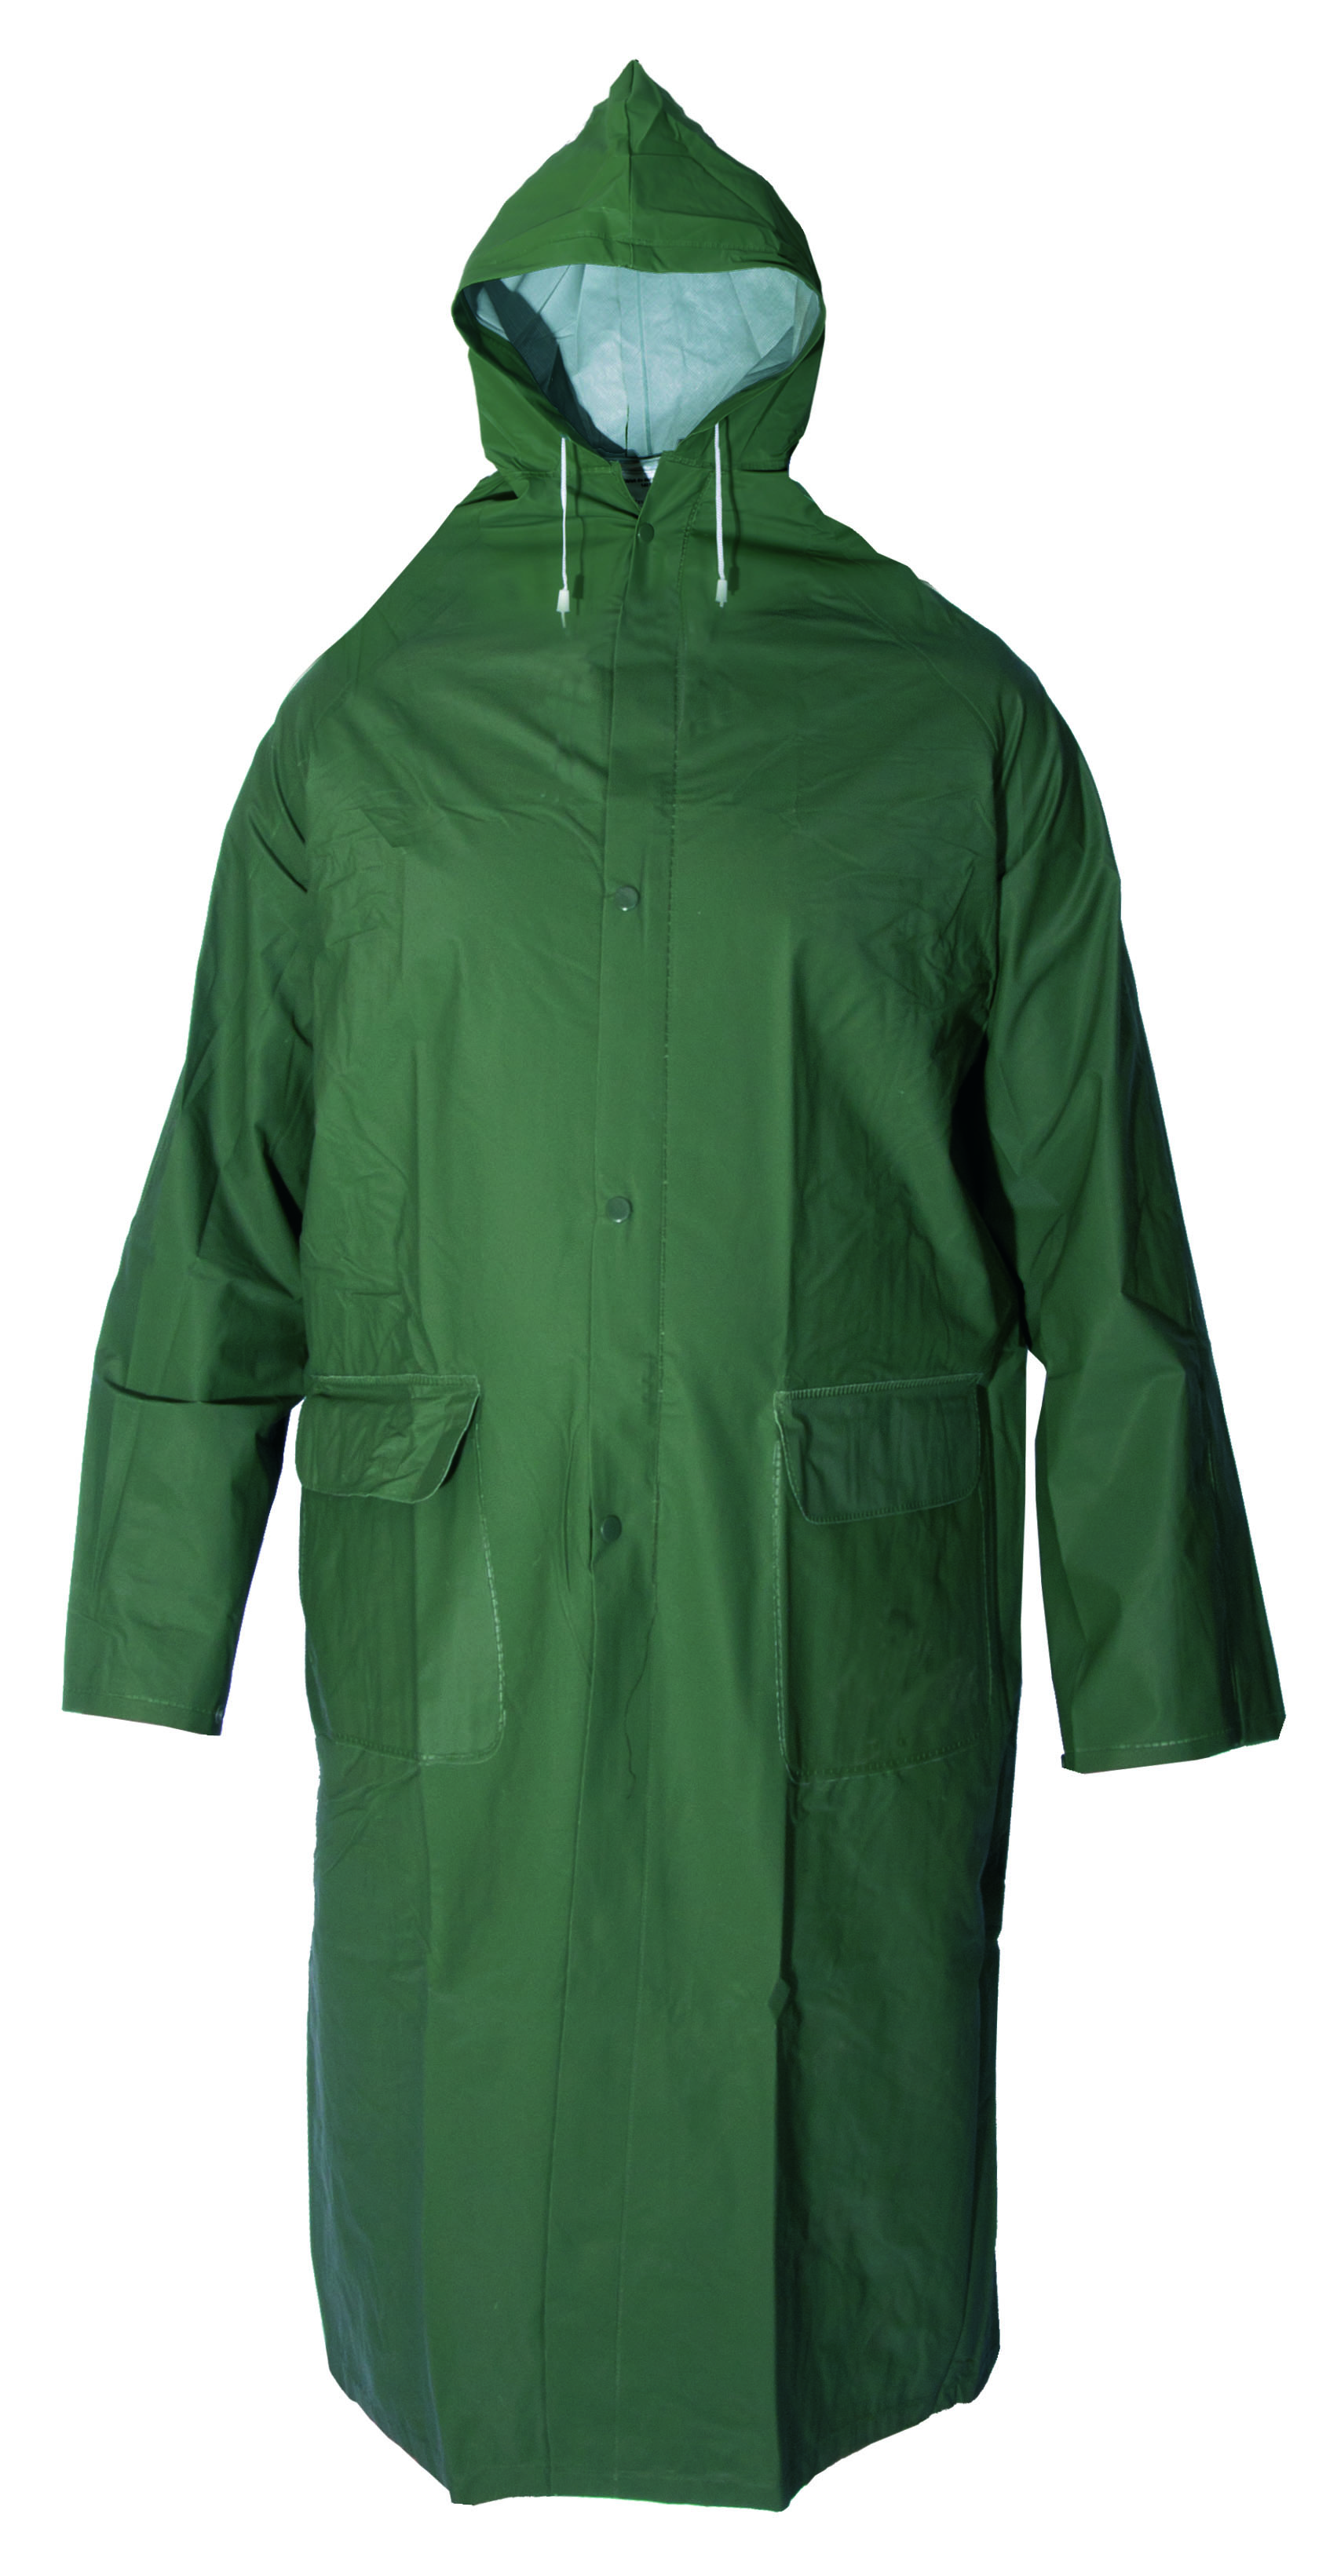 plášť do deště, s kapucí, zelený, velikost L 1.00 Kg TOP Sklad4 600245 15